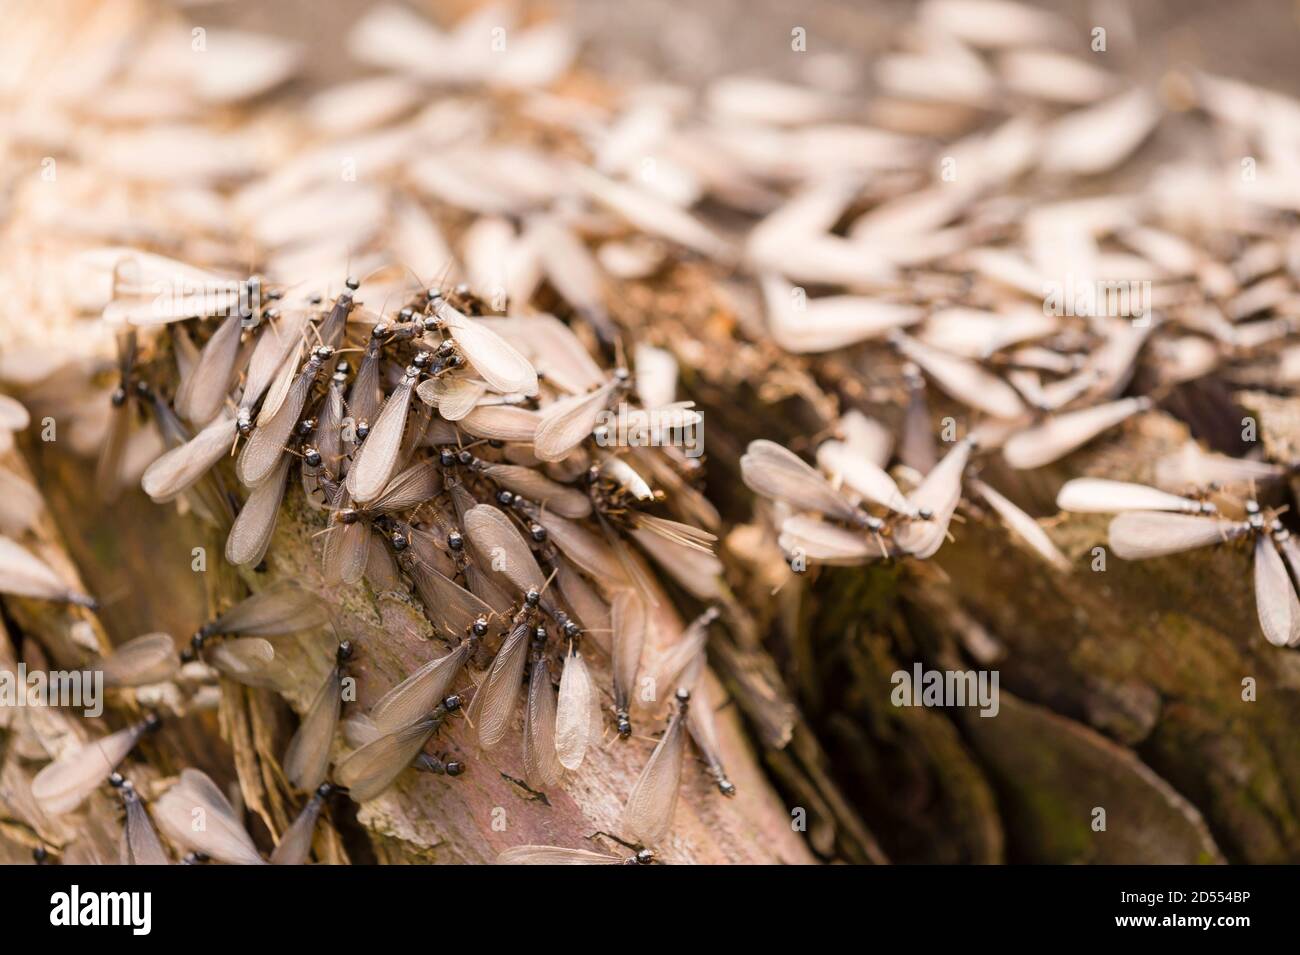 Alado, alado, casta reproductiva de una termita europea Foto de stock